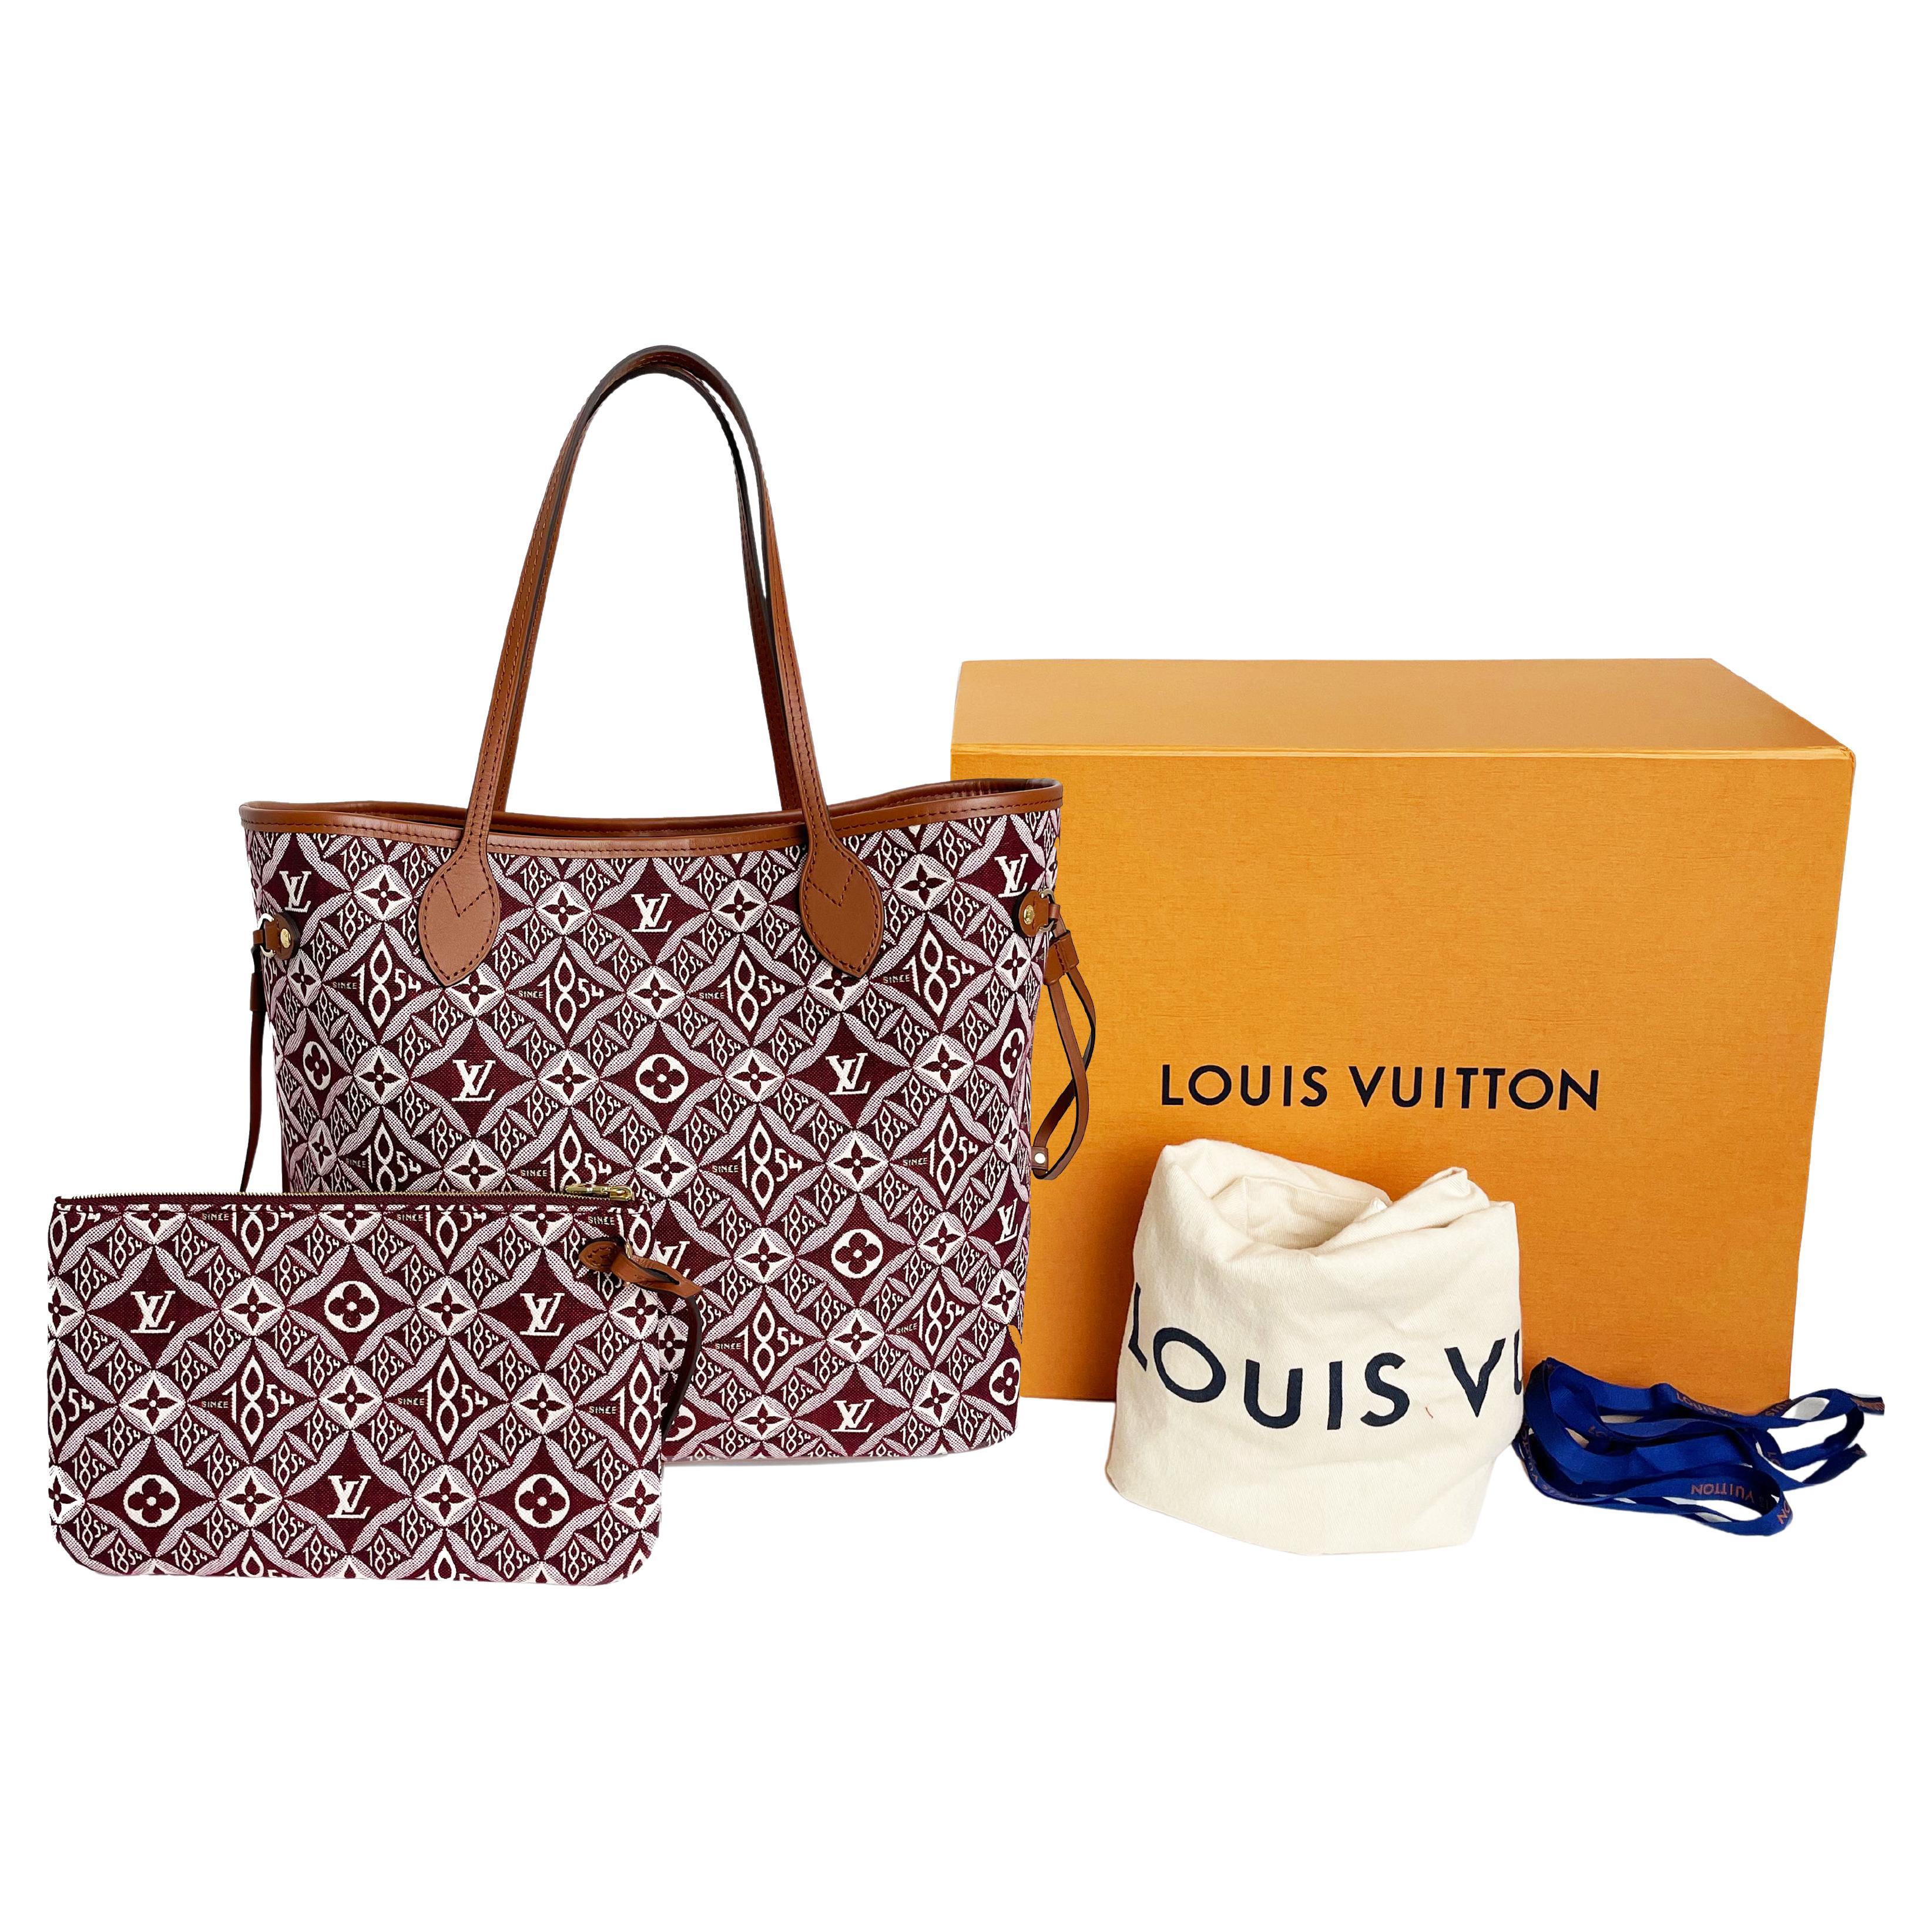 Louis Vuitton Since 1854 Neverfull Tote Bag Bordeaux + Removable